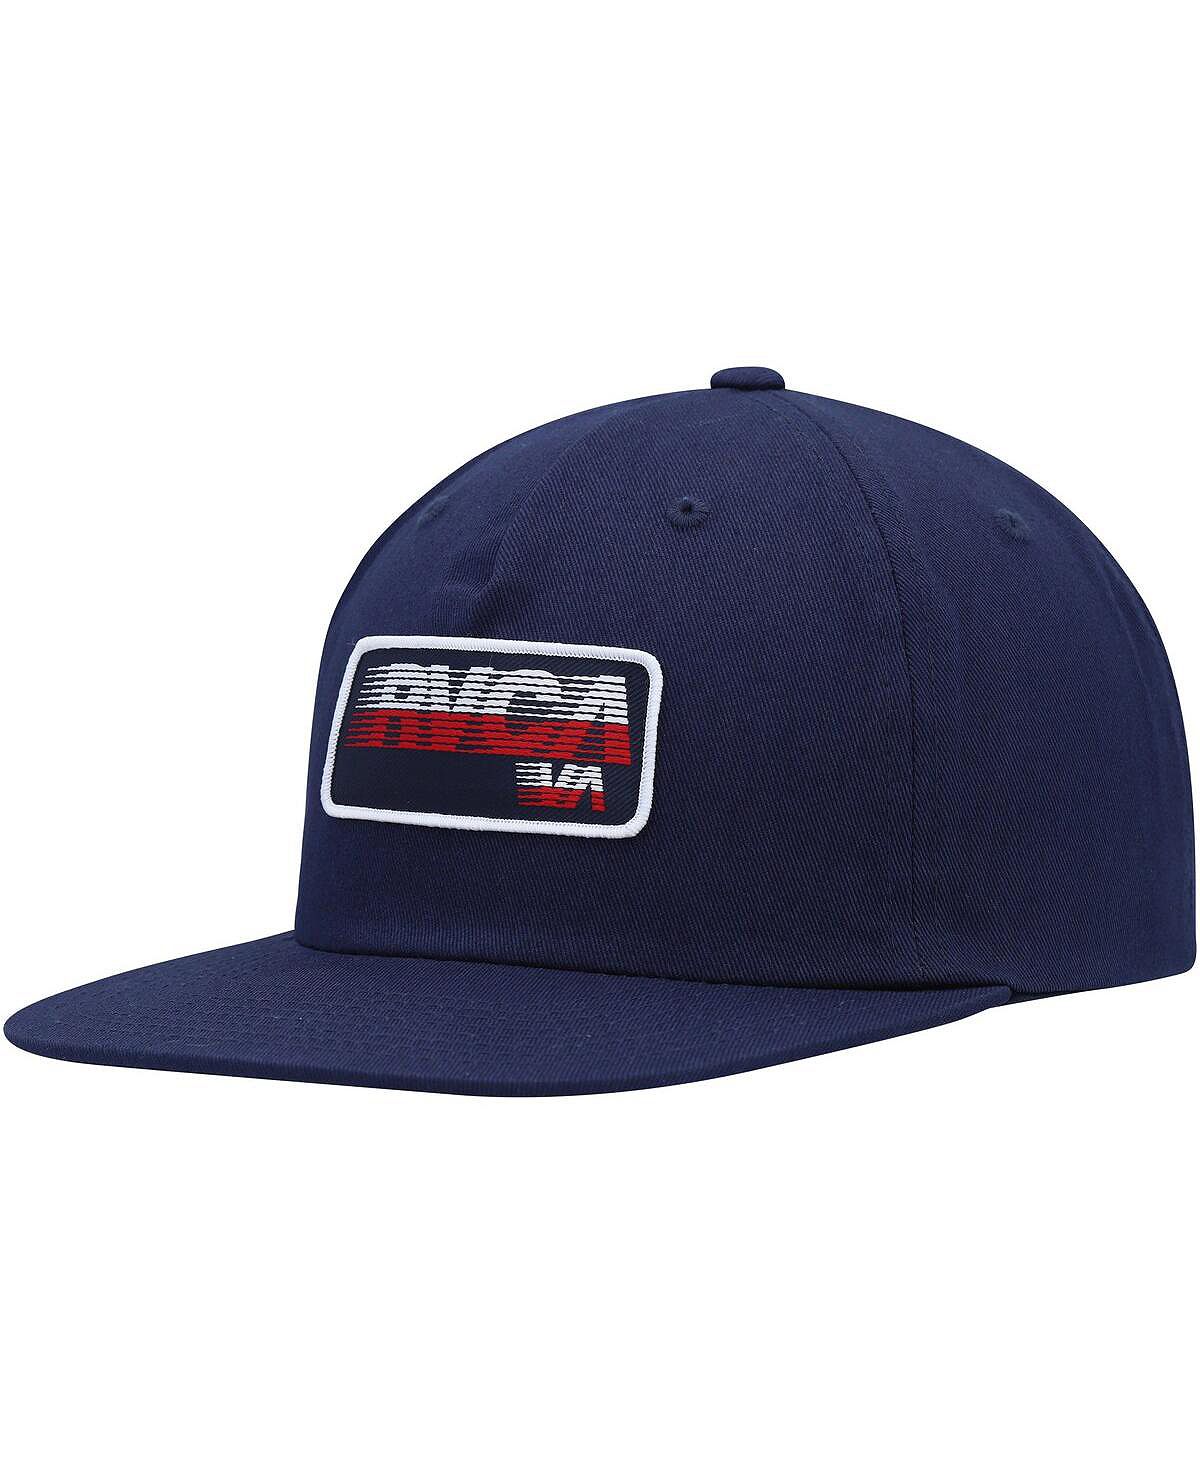 Мужская темно-синяя шляпа Snapback Motion RVCA